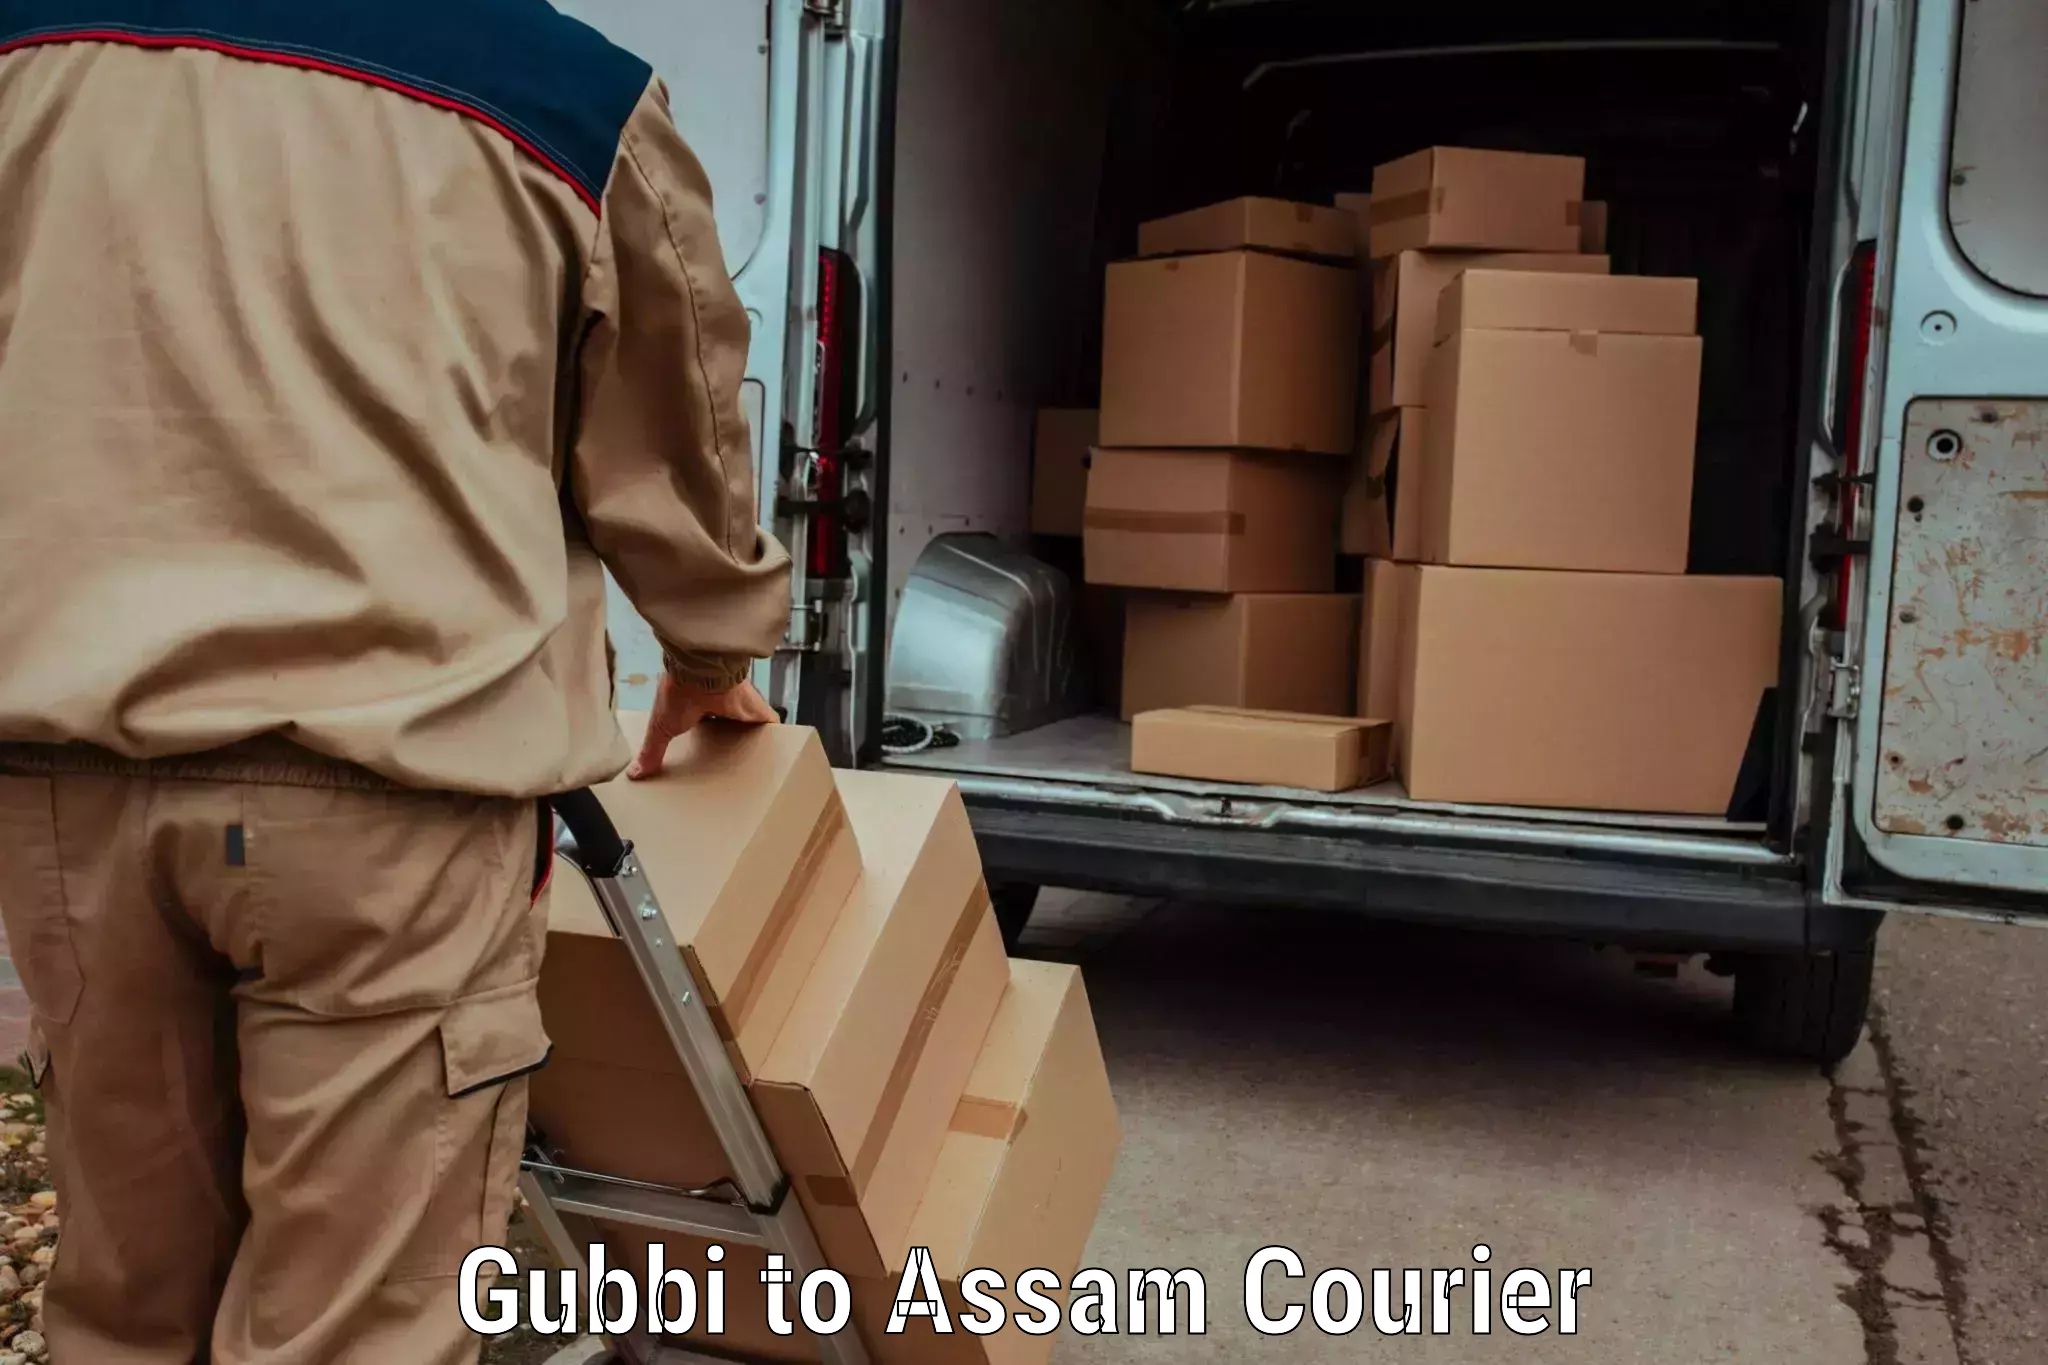 Reliable parcel services Gubbi to Nagaon